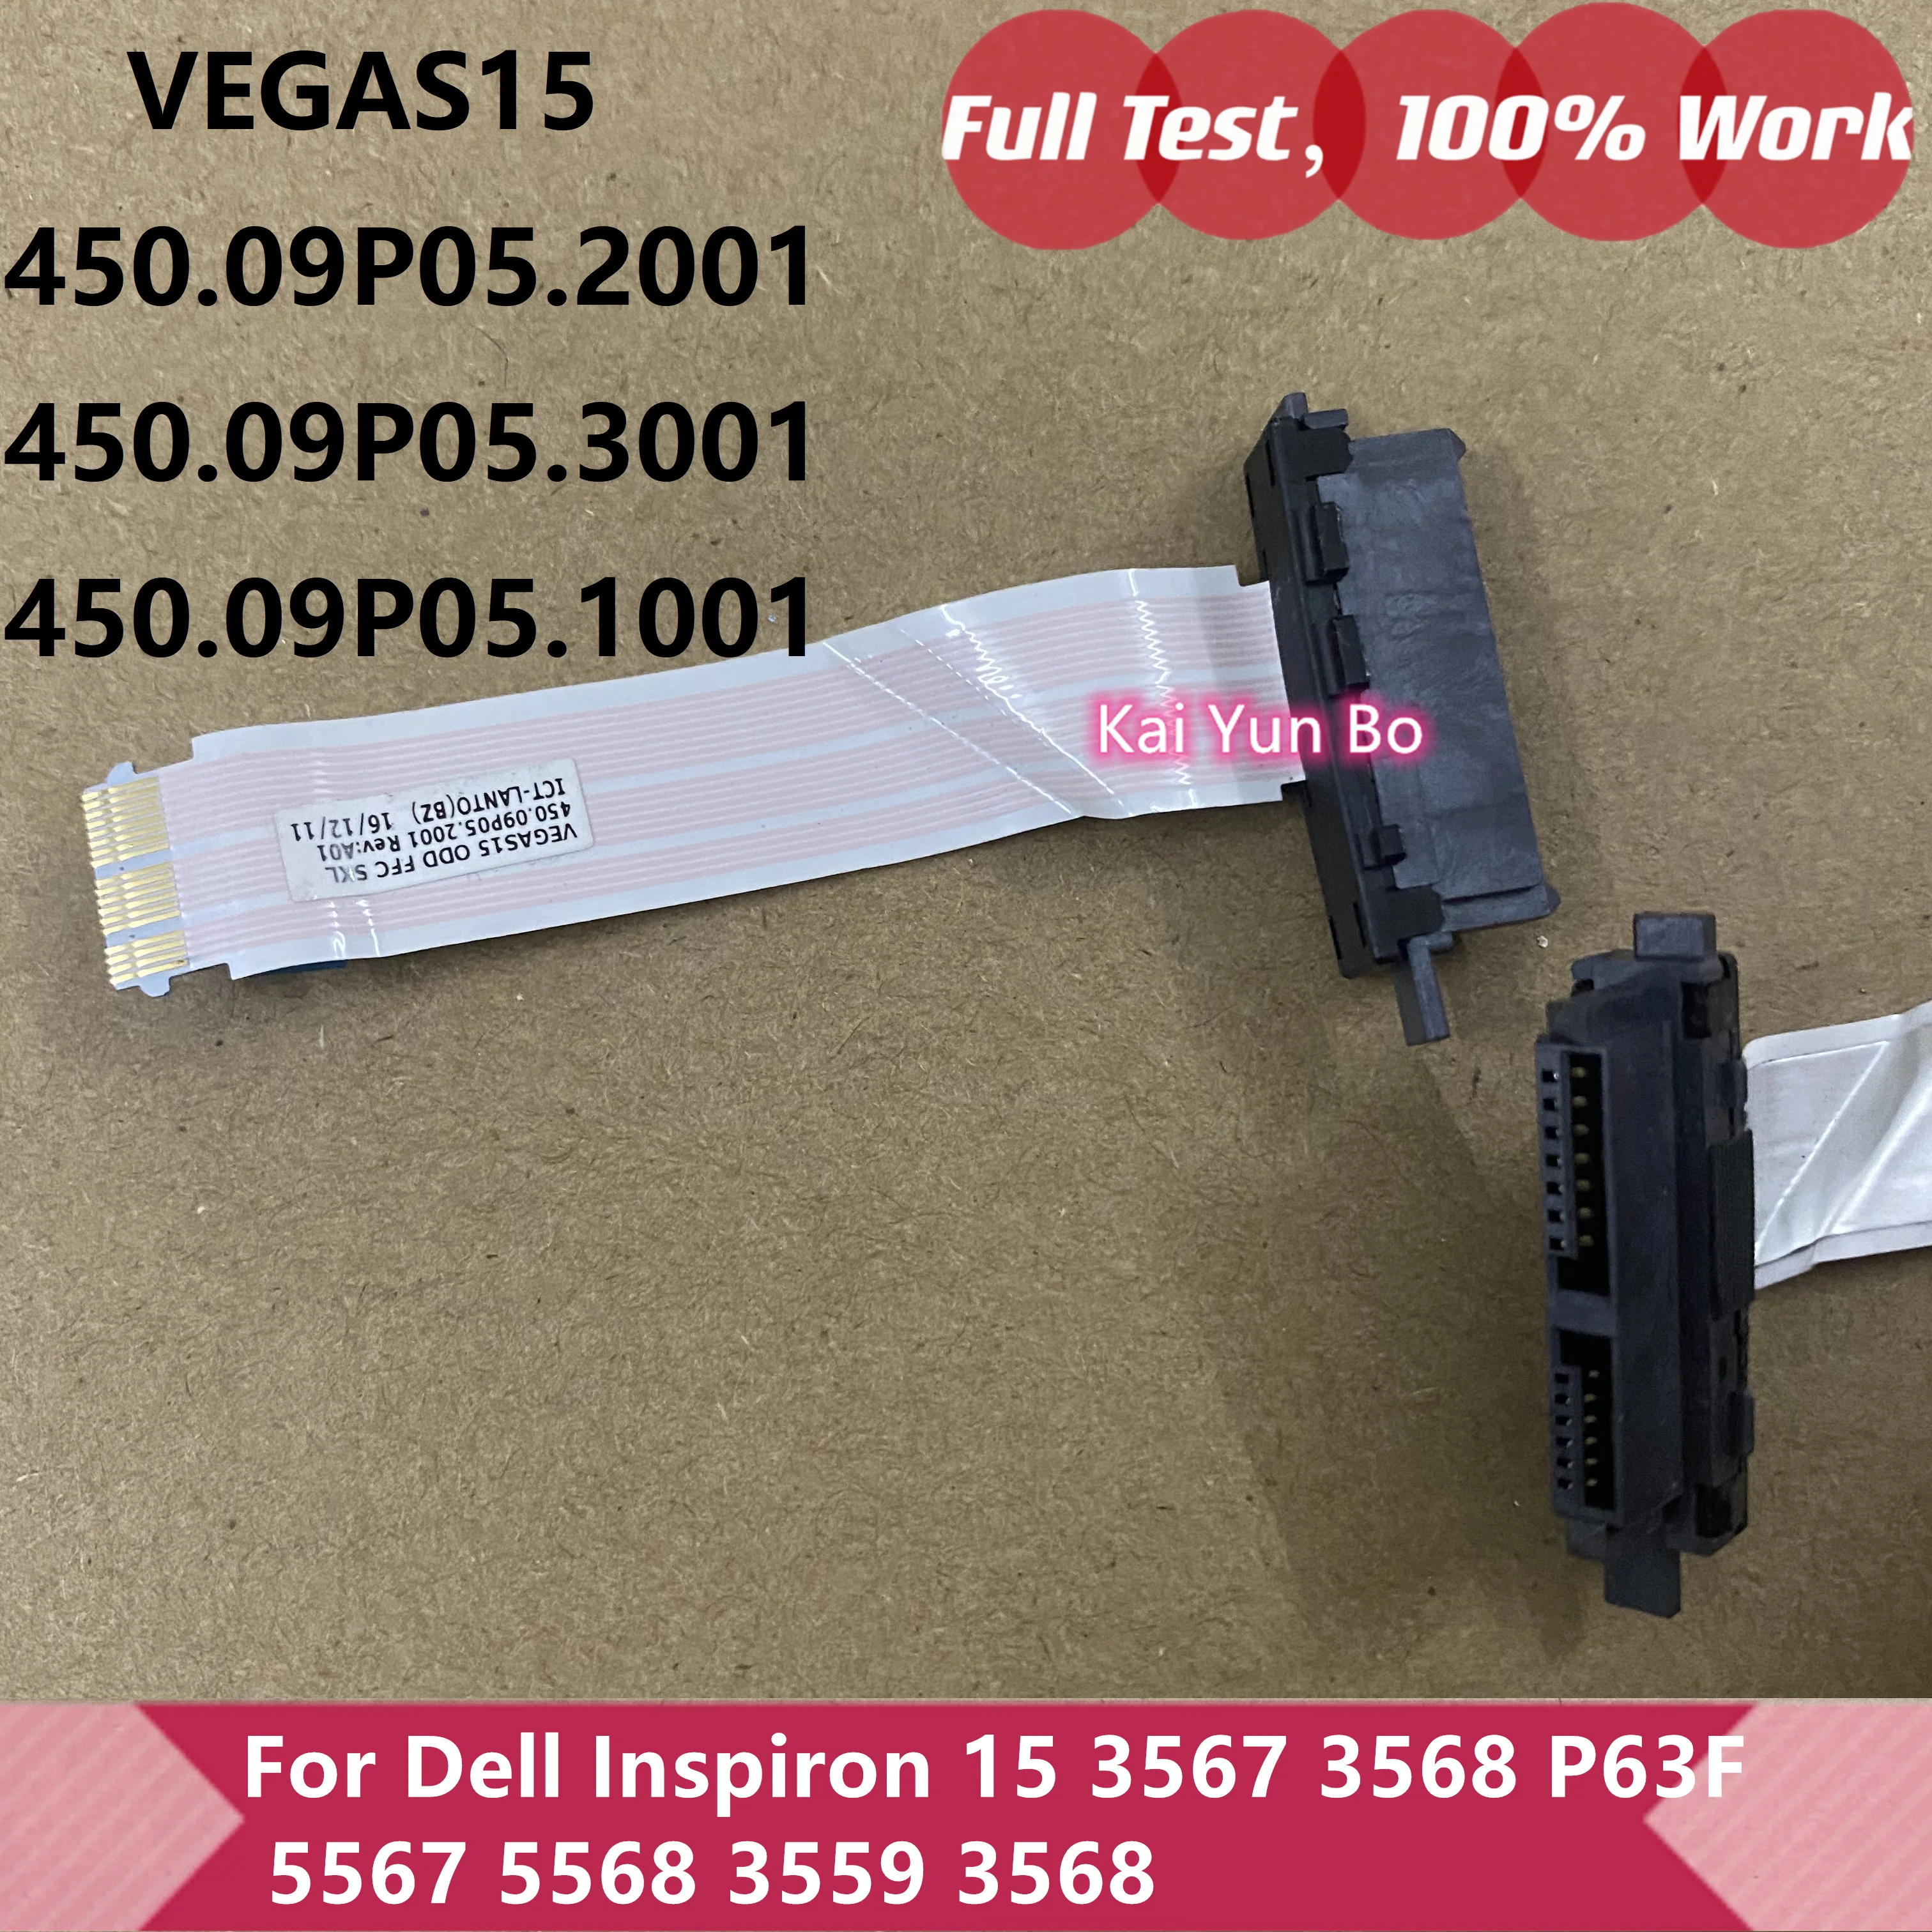 

For Dell Inspiron 15 3567 3568 P63F 5567 5568 3559 3568 DVD ODD Connector Cable 450.09P05.2001 450.09P05.3001 450.09P05.1001